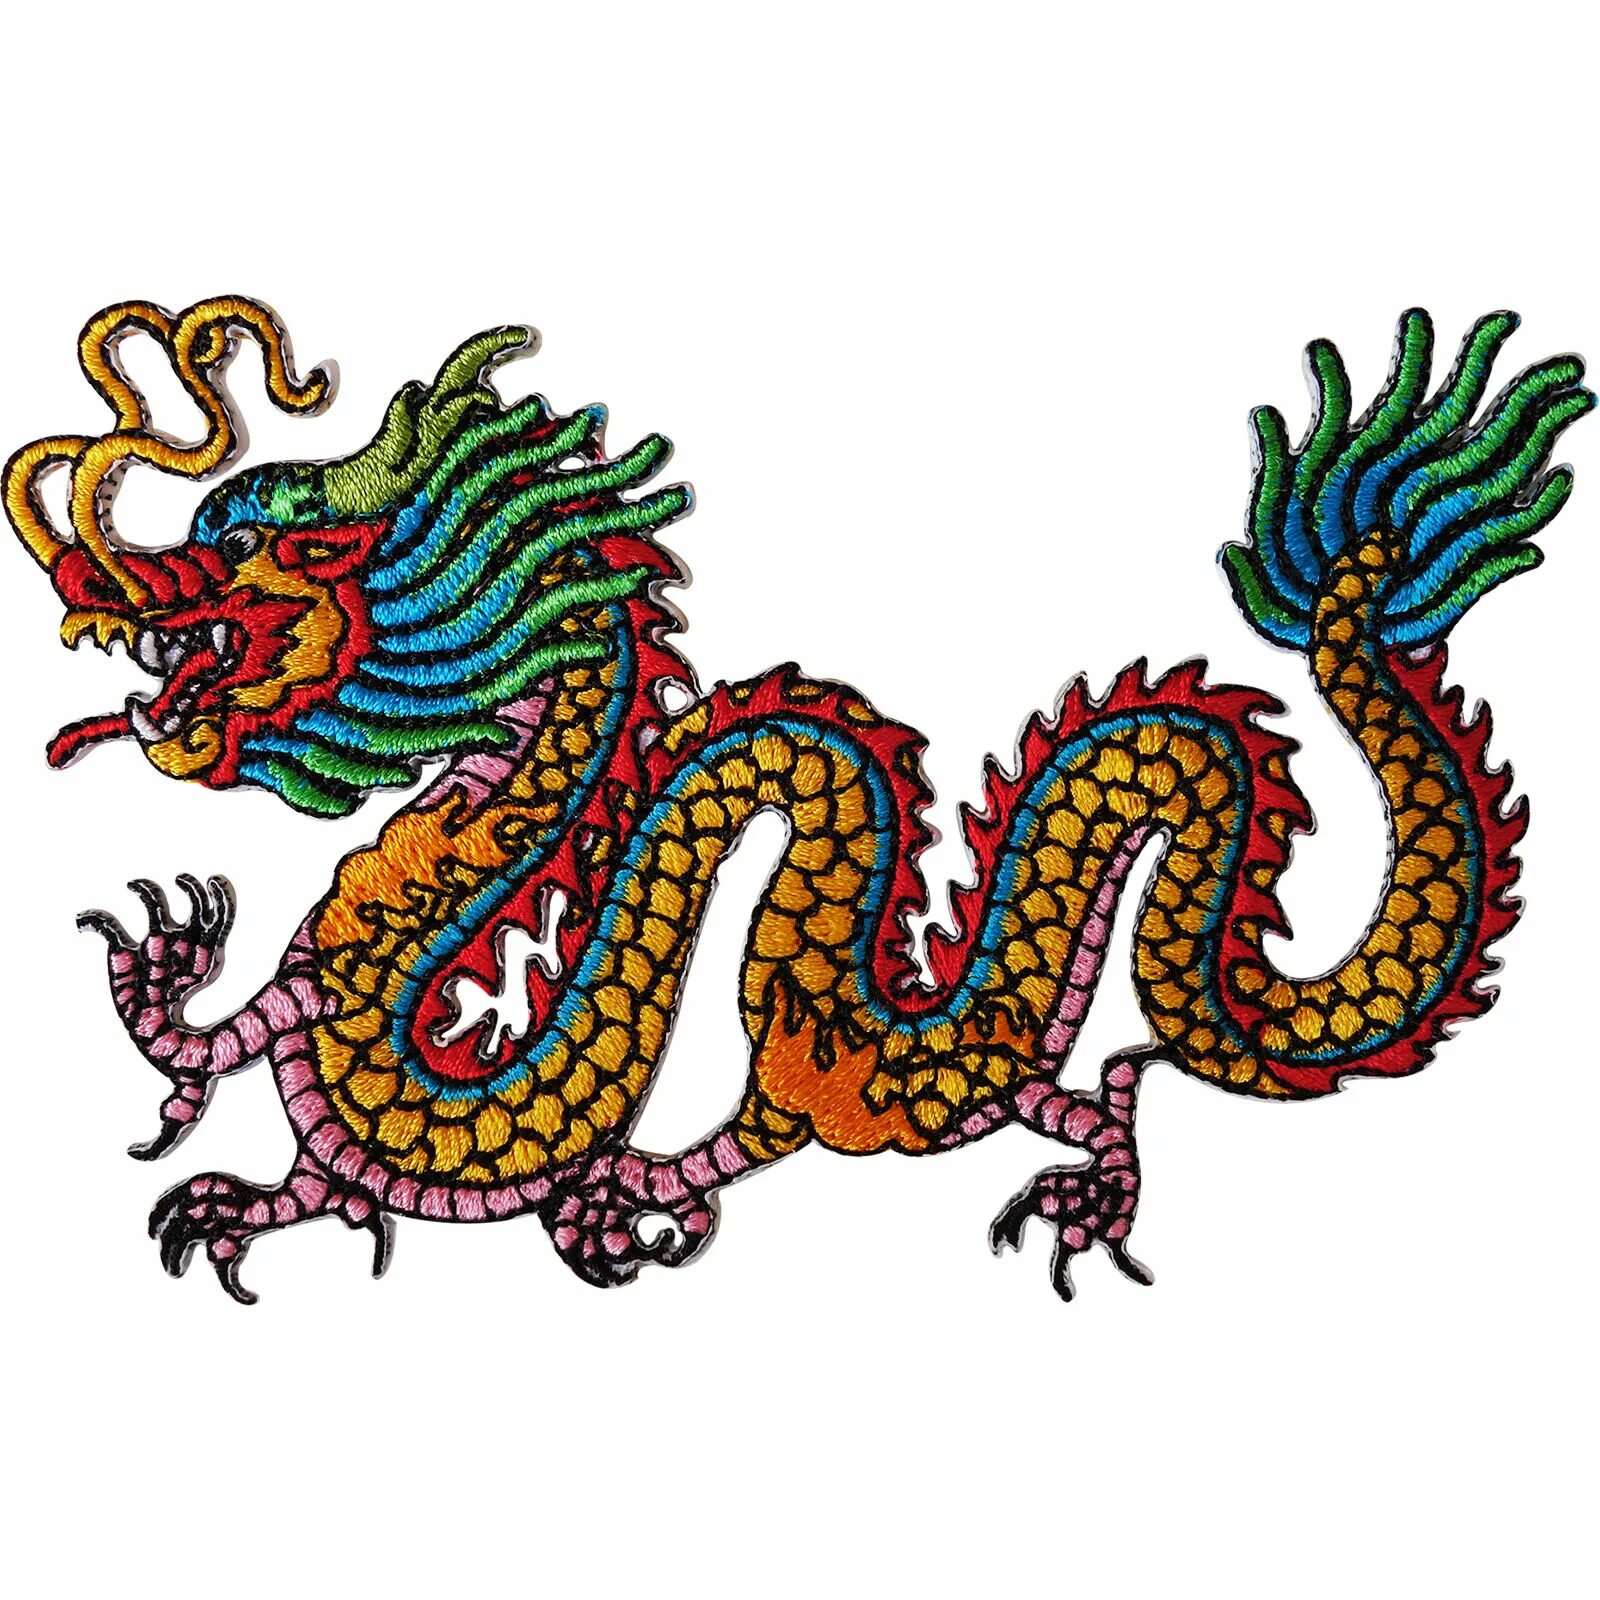 Чжулун китайский дракон. Традиционный китайский орнамент дракон. Китайский дракон вышивка. Древний Китай дракон. Русский дракон китайский дракон